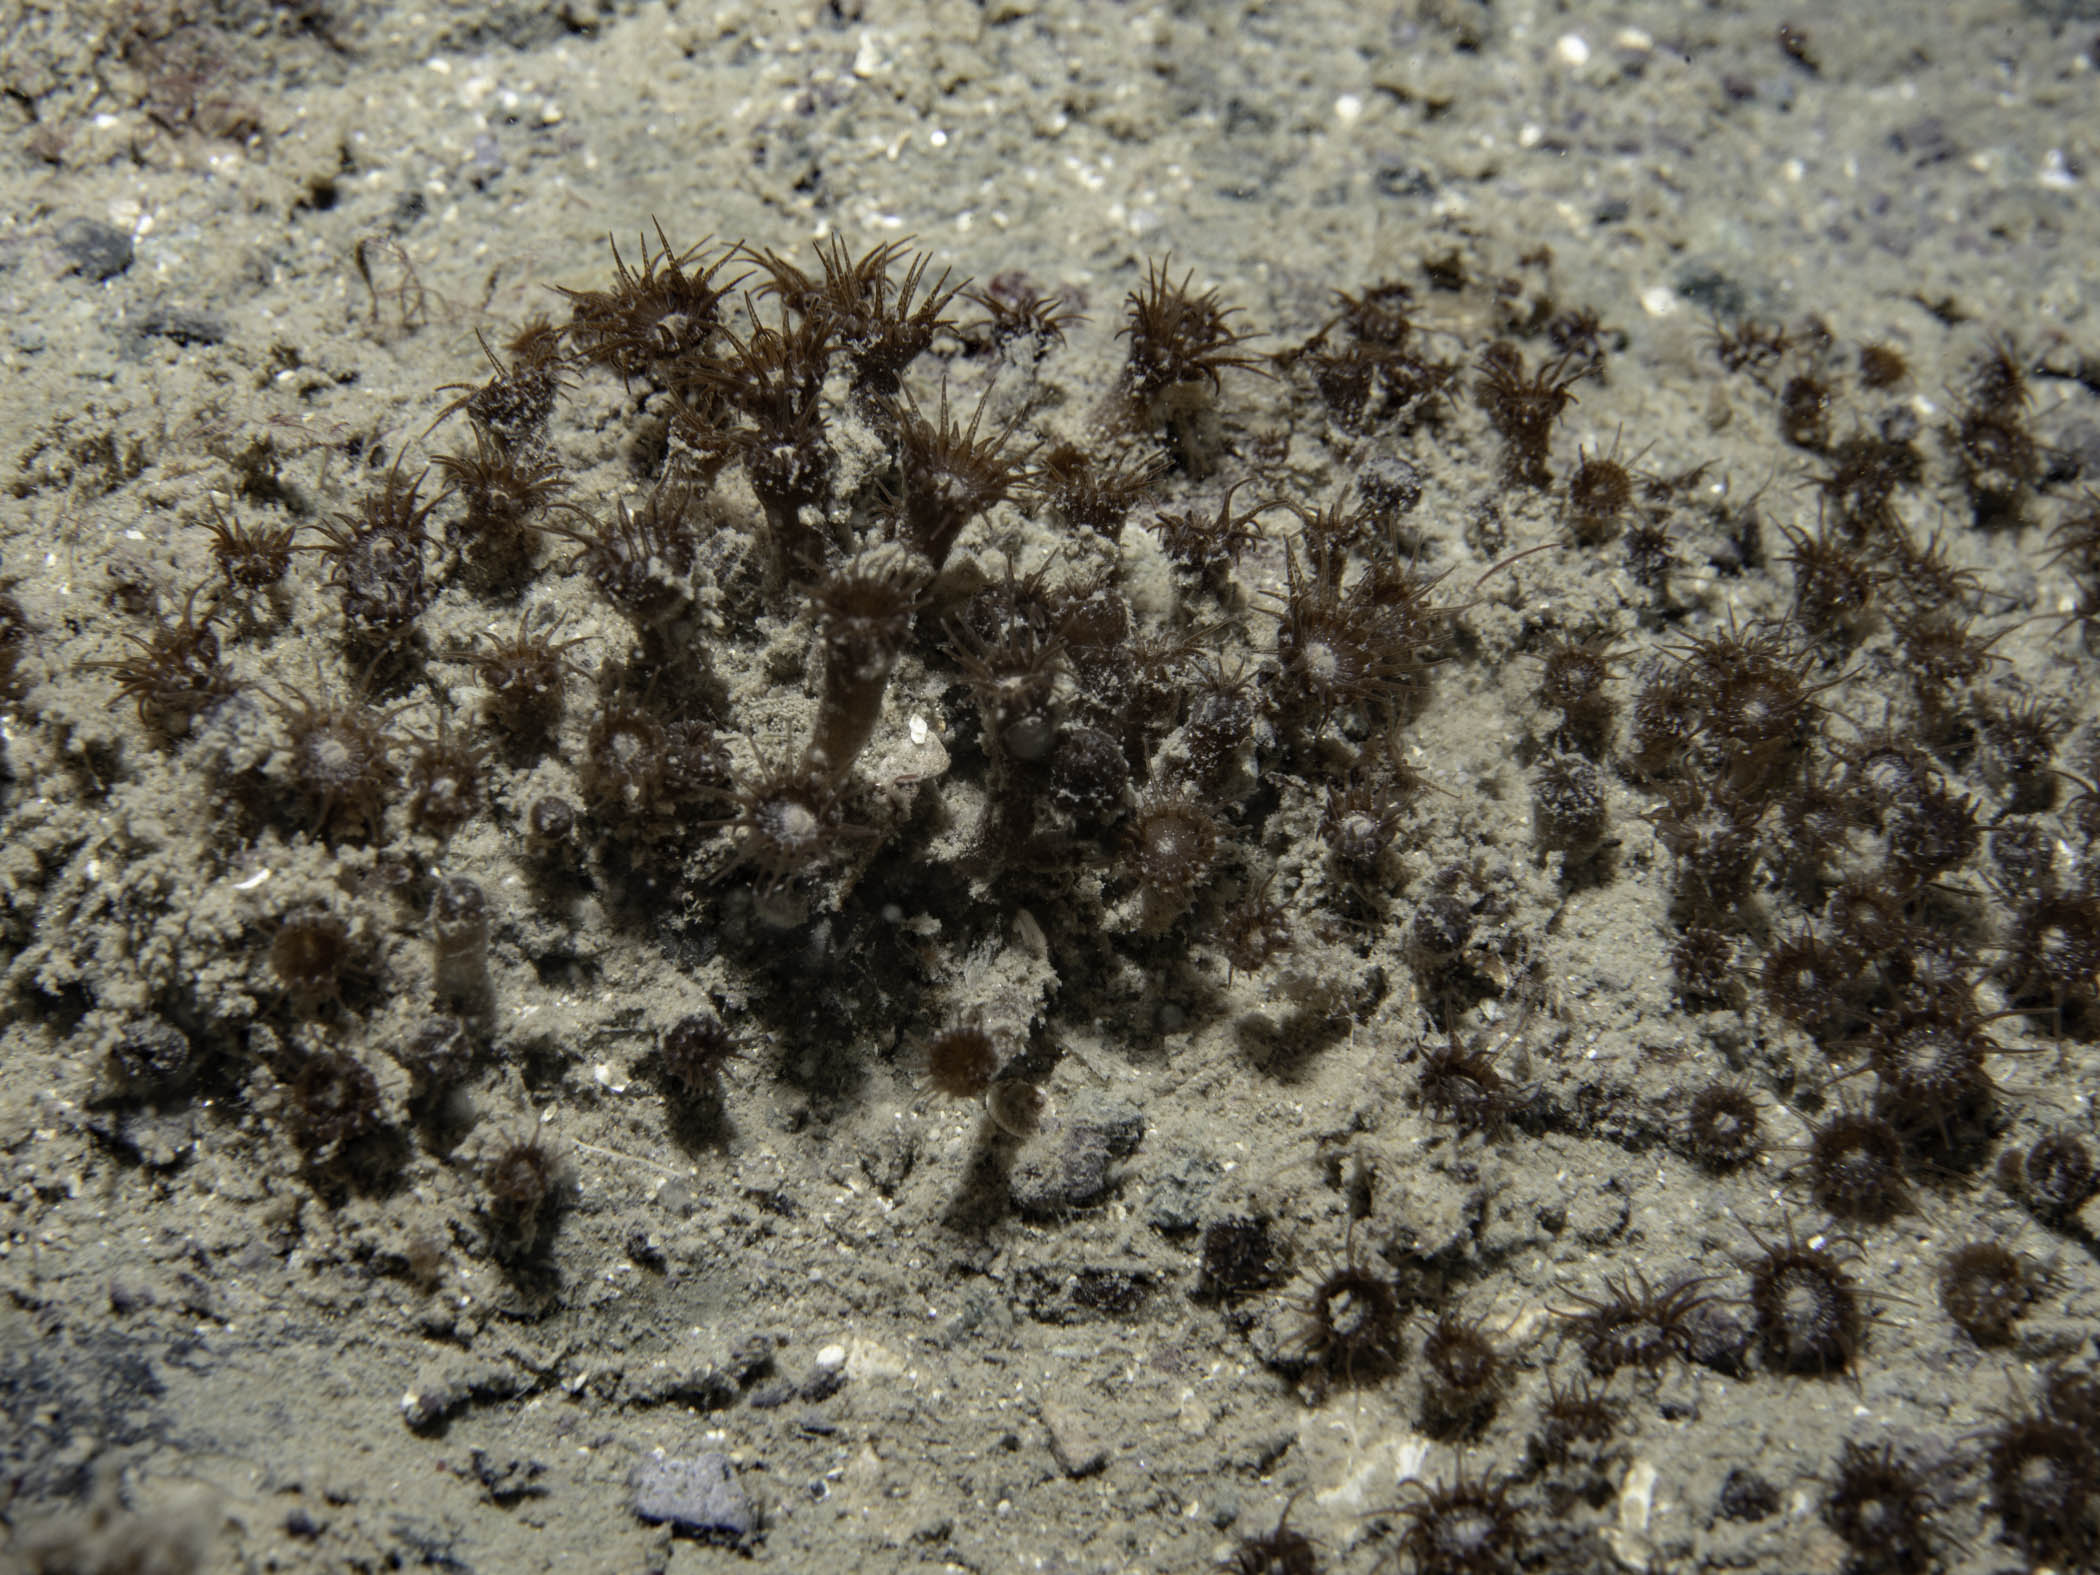 image: Isozoanthus sulcatus. Lough Hyne, 2019.